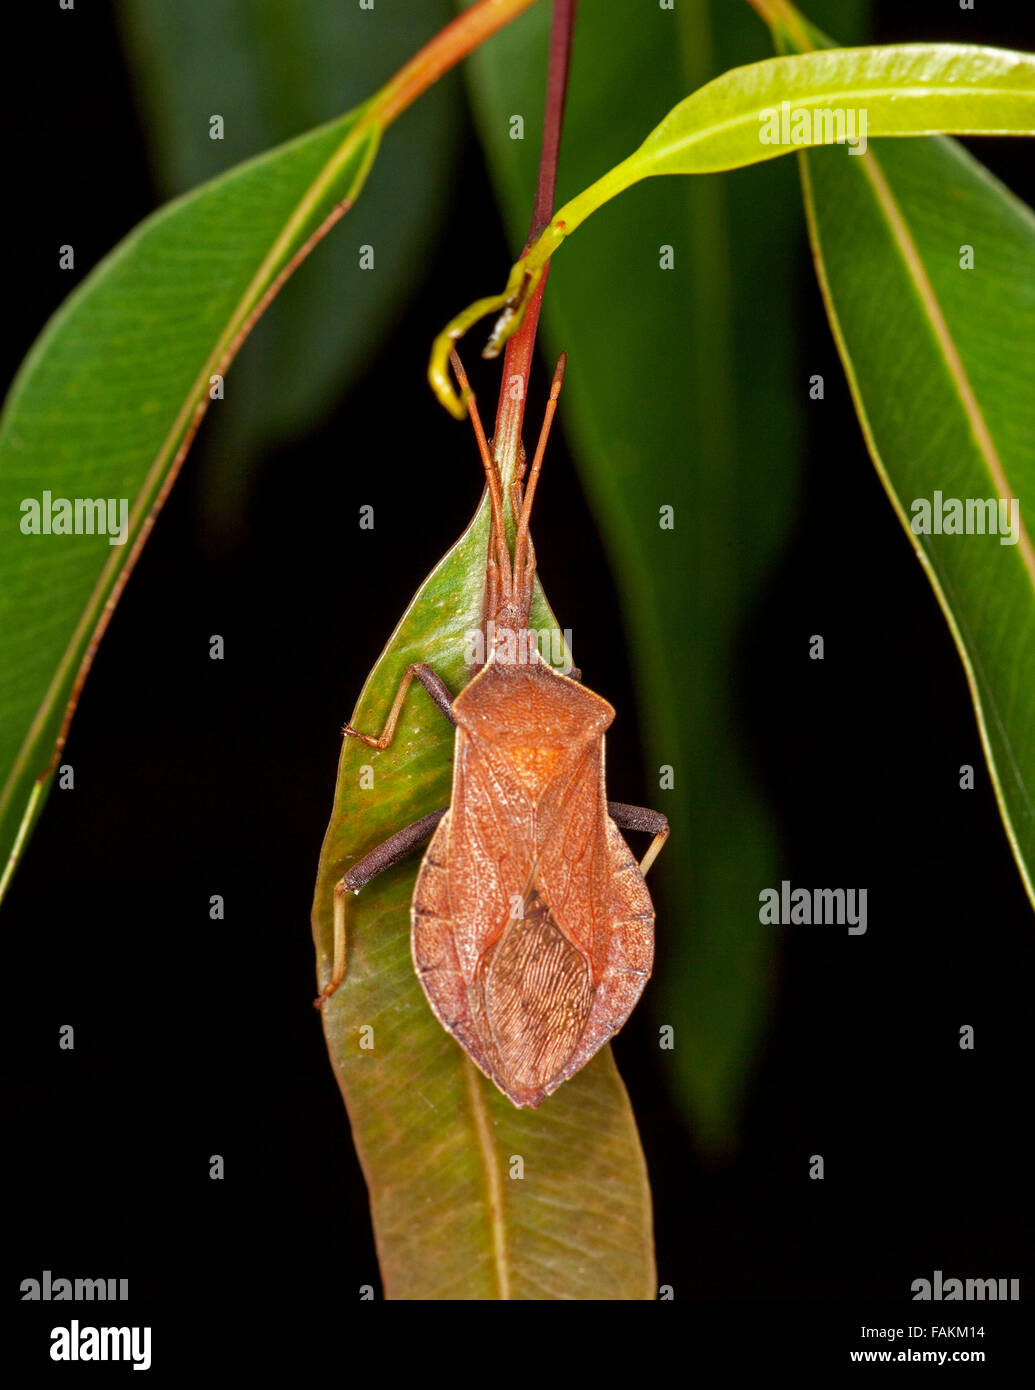 Australian marrone punta di eucalipto / gum tree / punta wilter / coreid bug Amorbus rhombifer sulla foglia verde su sfondo nero Foto Stock